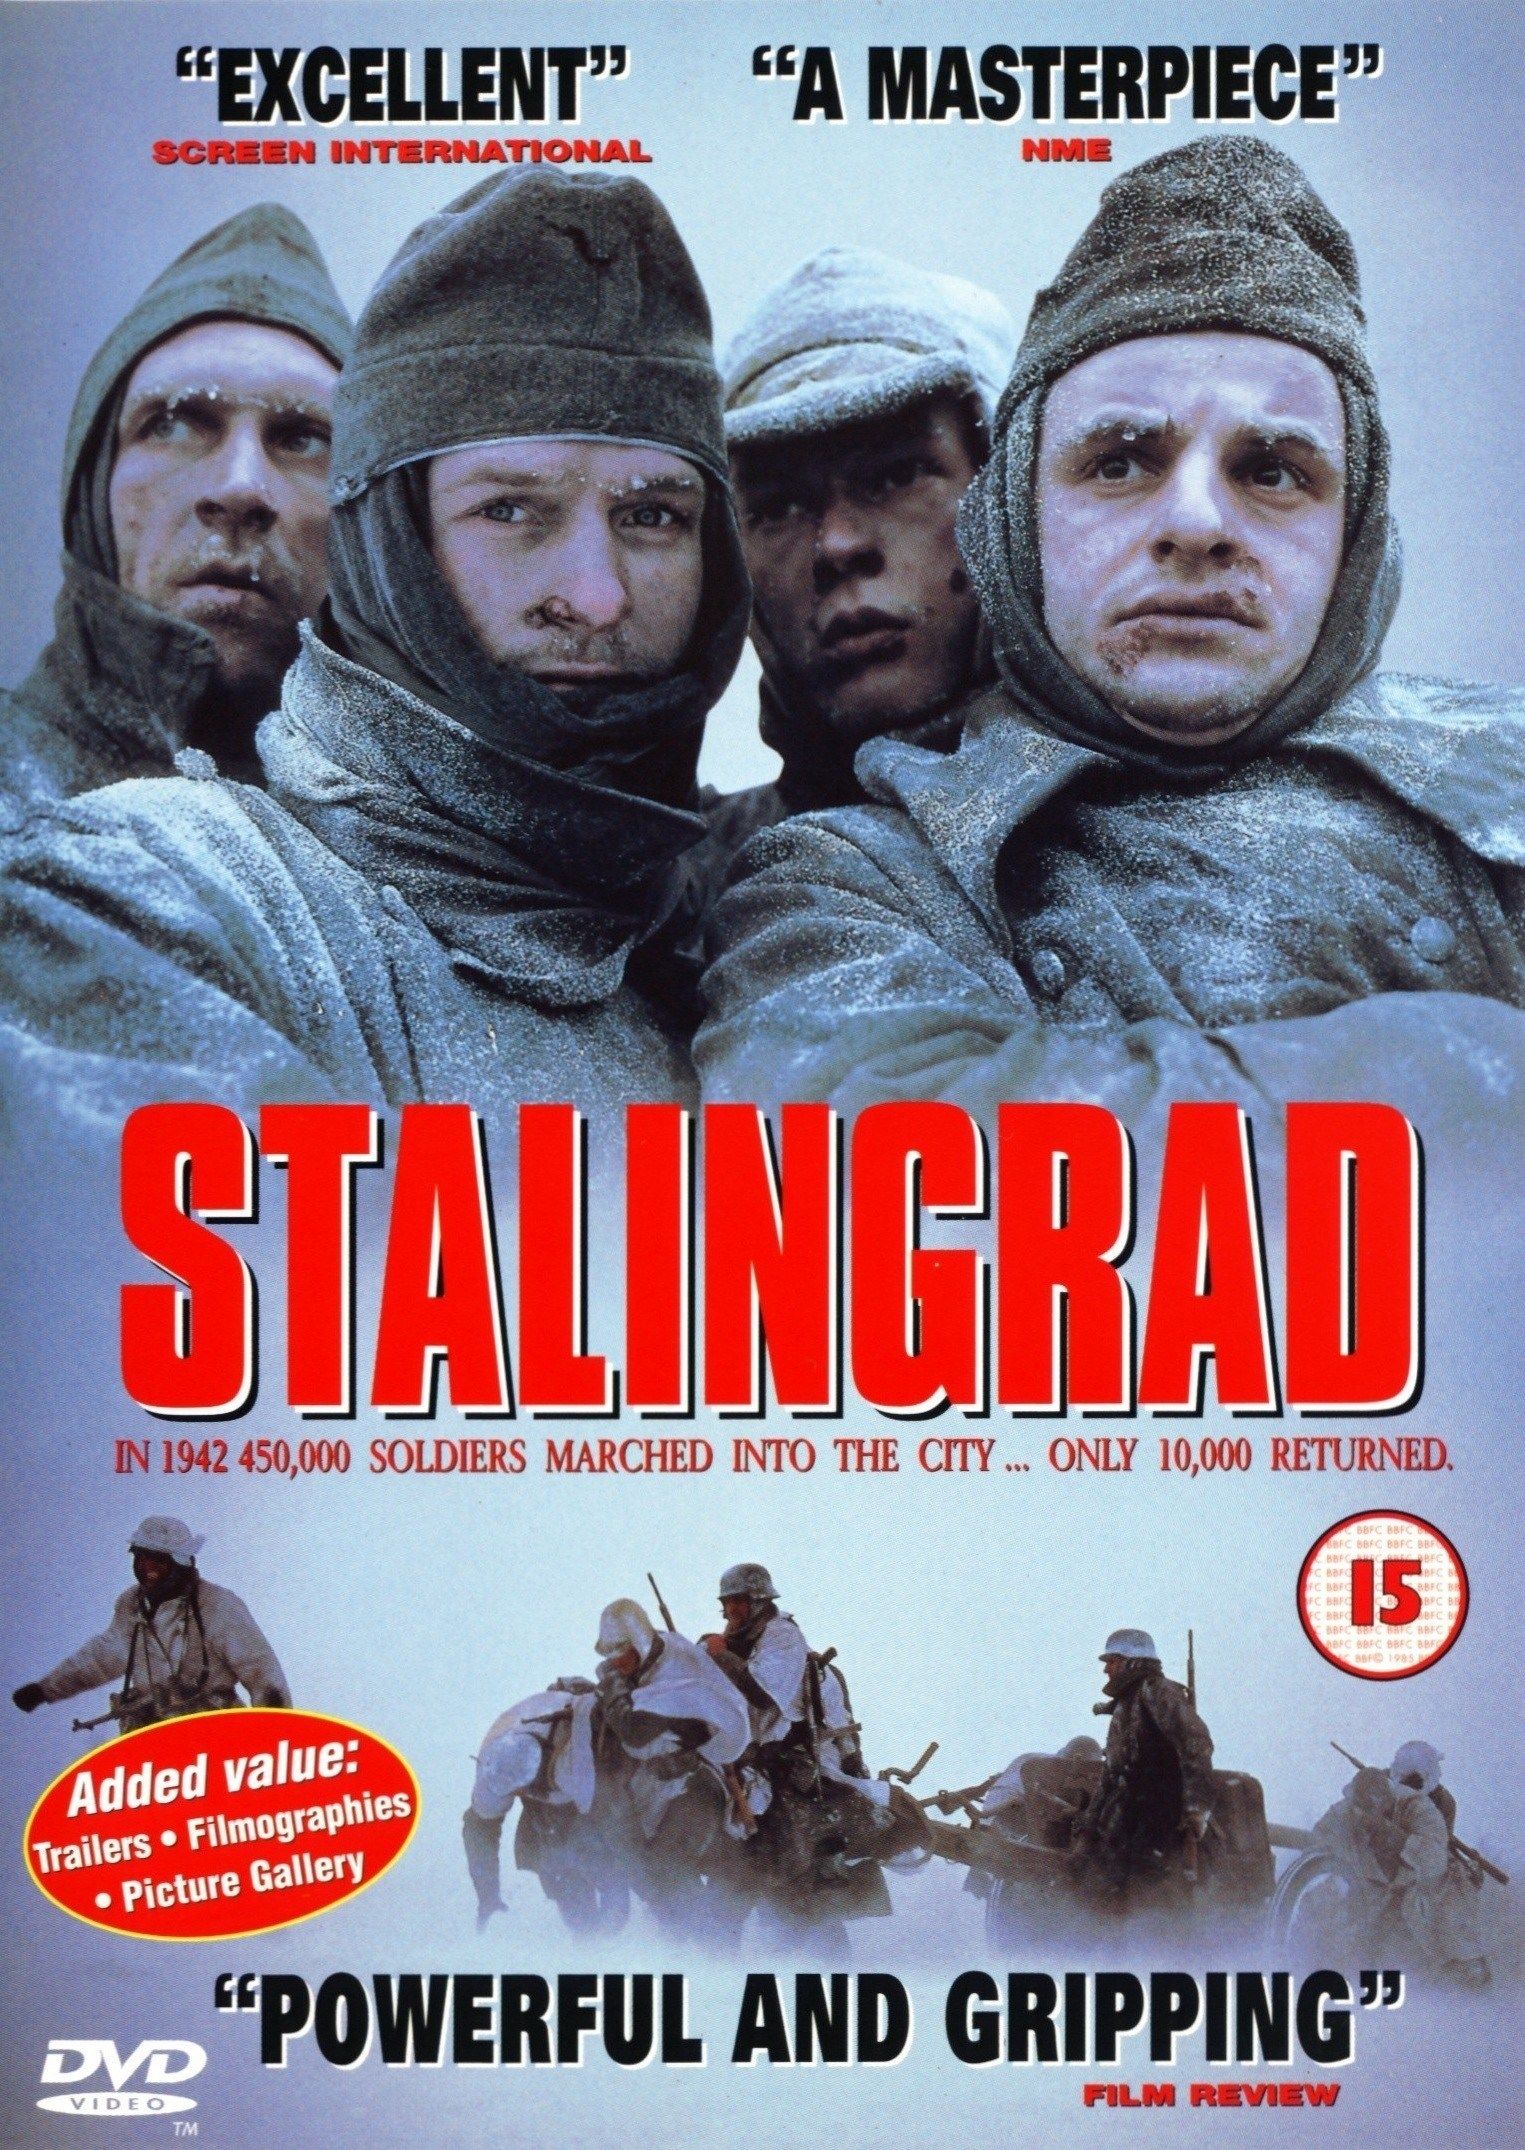 Sztálingrád online film